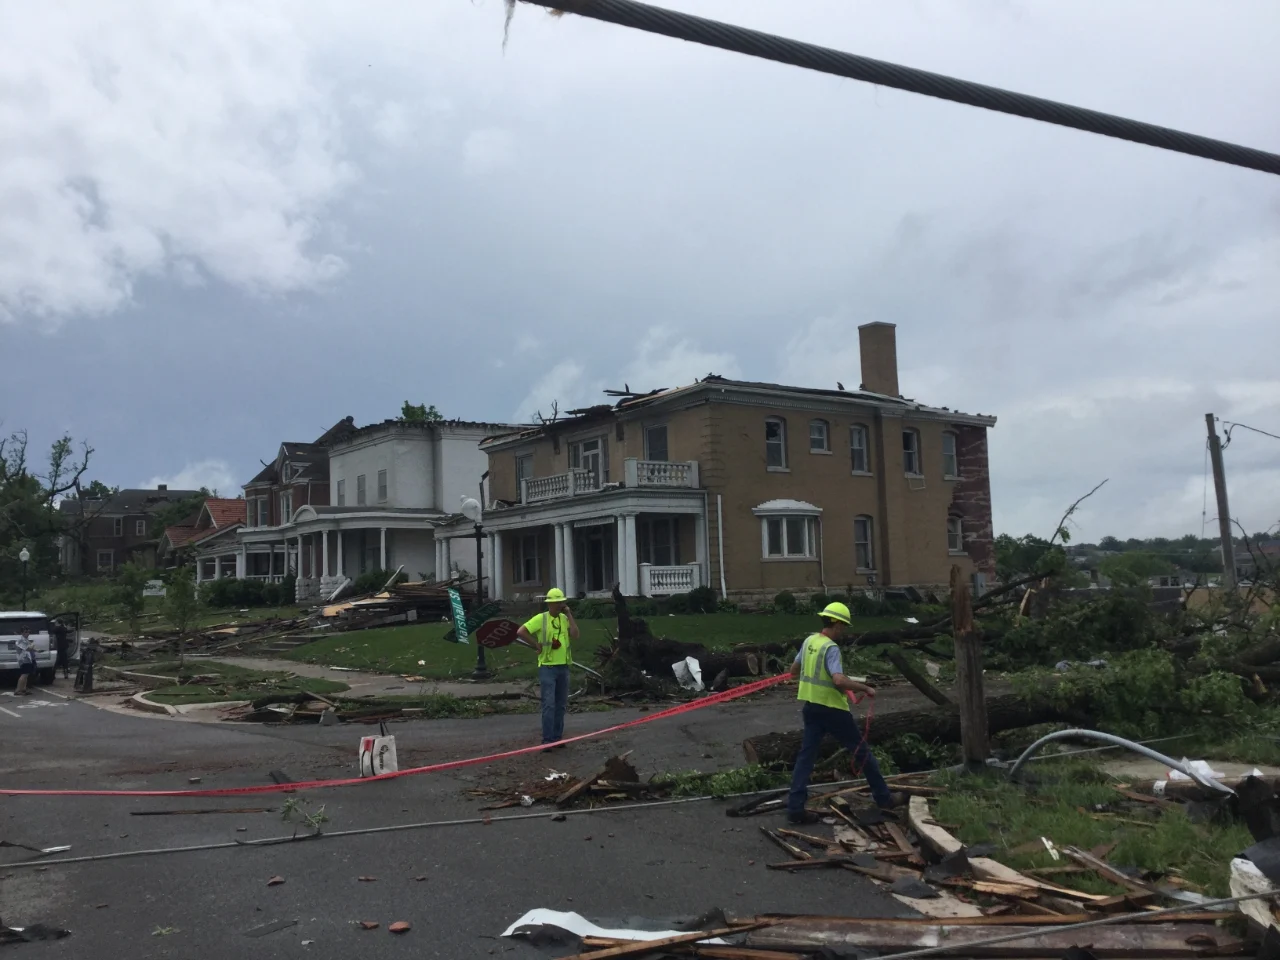 Jefferson City, MO tornado damage May 22, 2019